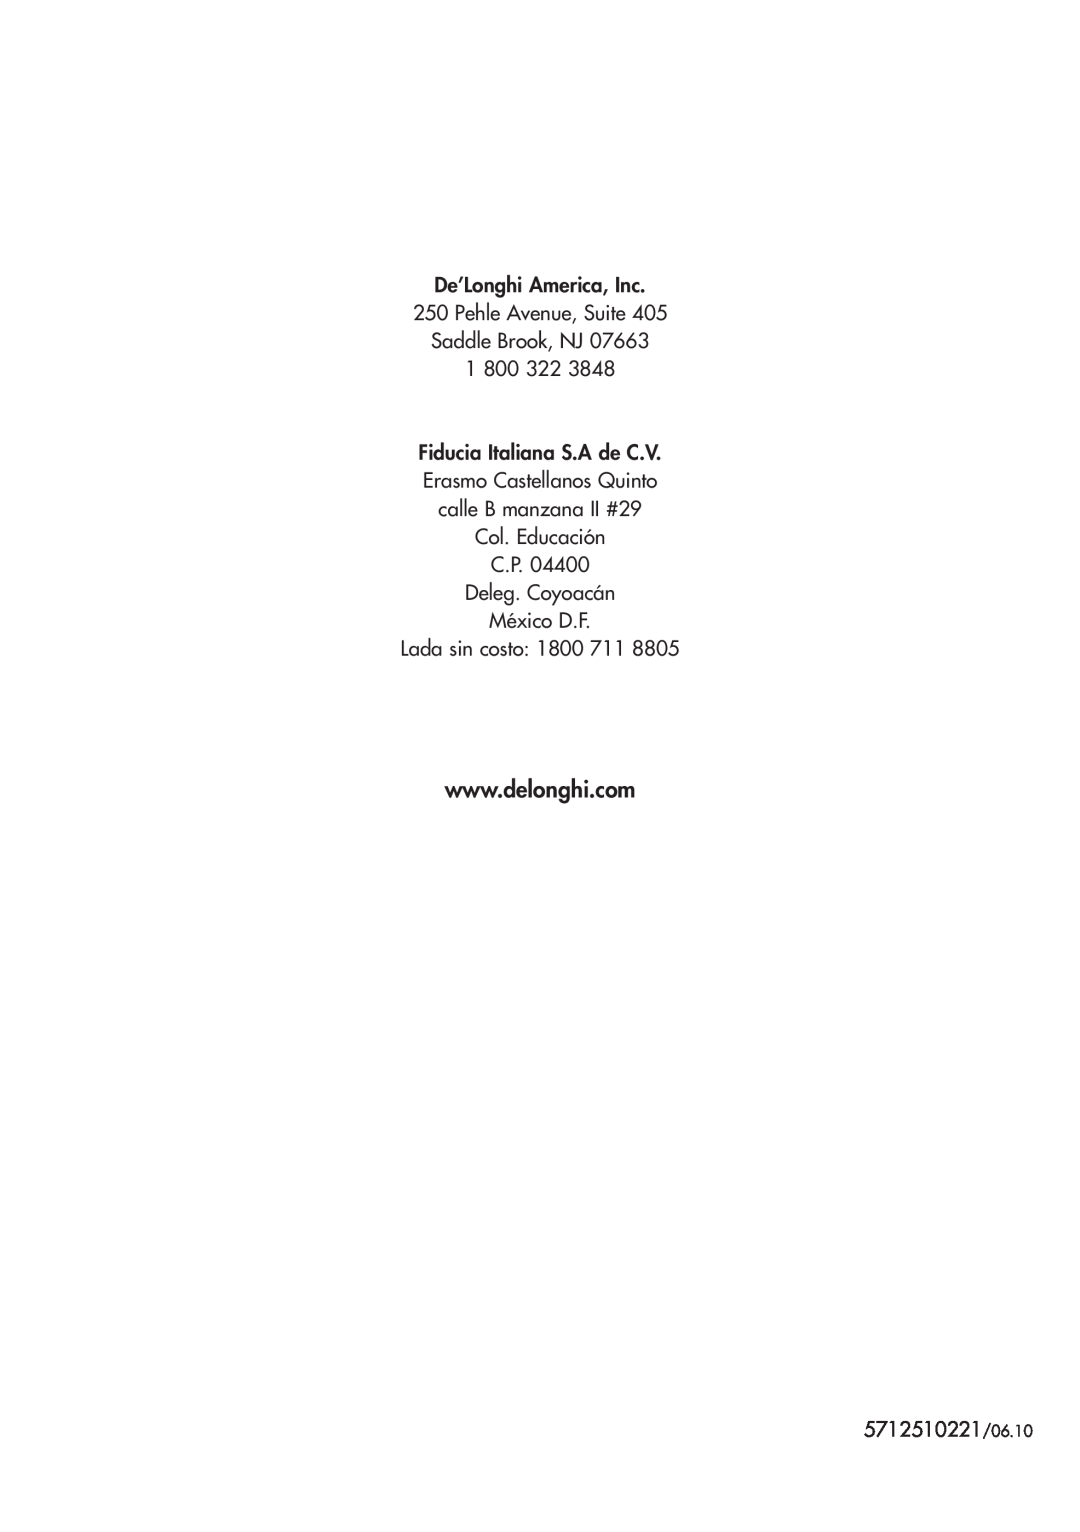 DeLonghi D28313 manual De’Longhi America, Inc 250 Pehle Avenue, Suite Saddle Brook, NJ, 5712510221/06.10 